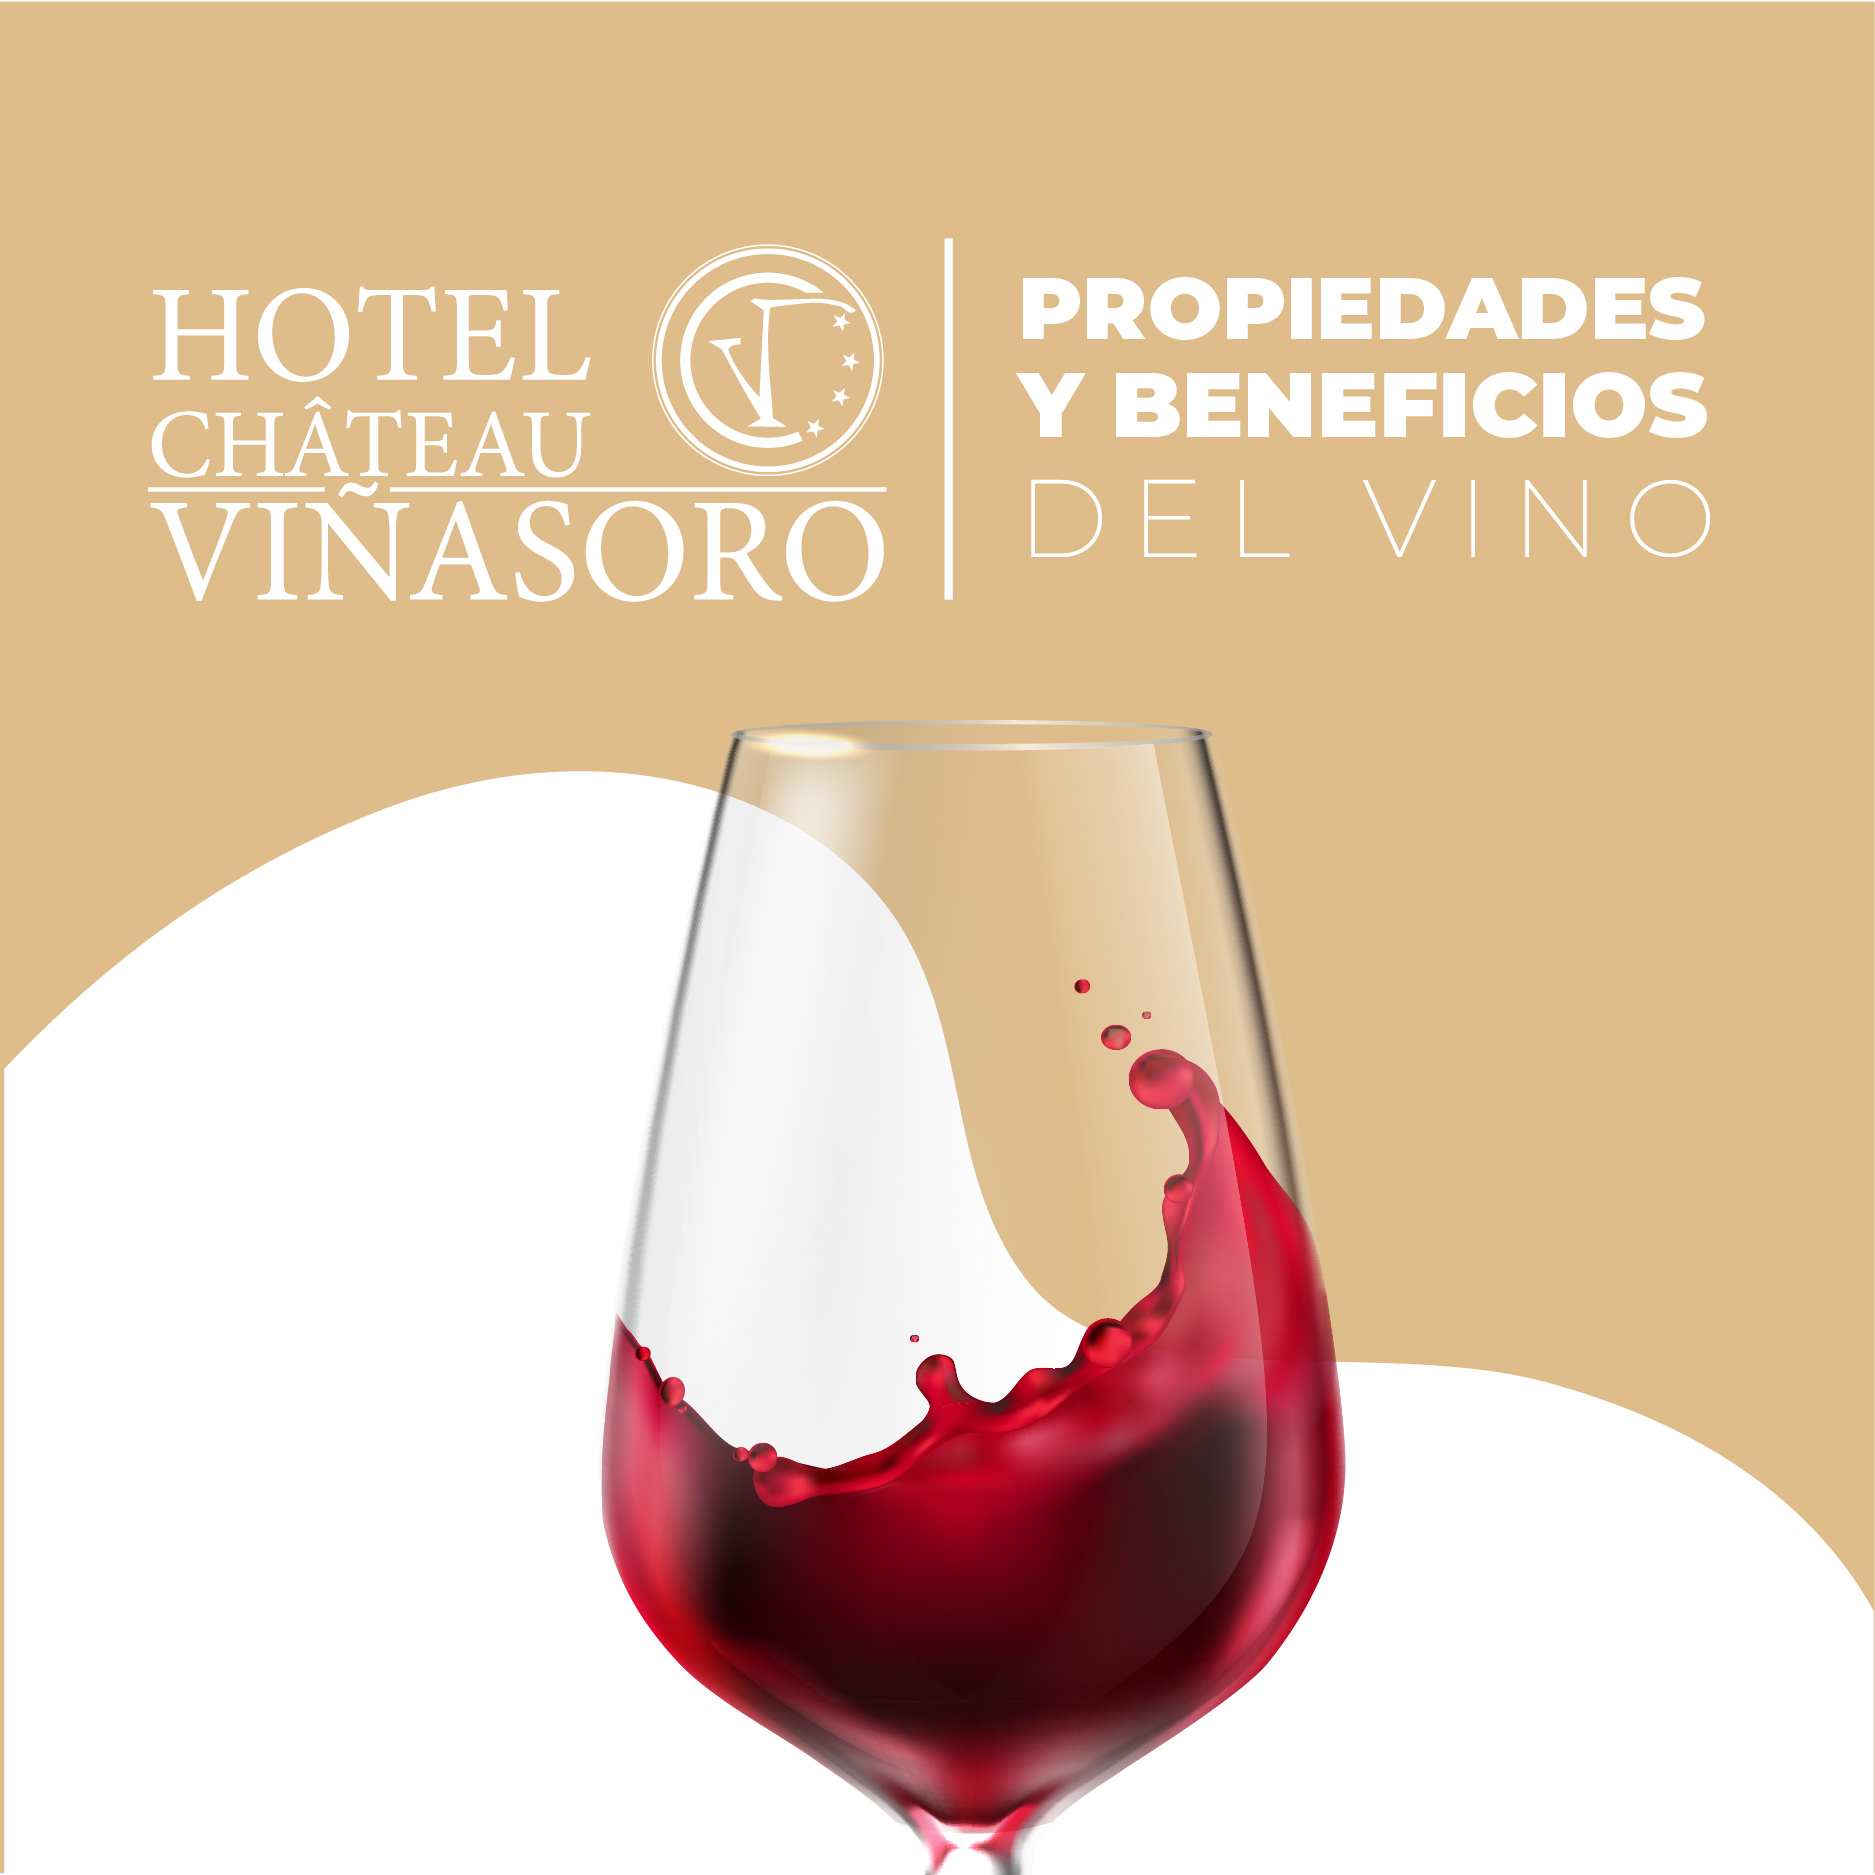 ¿Cuáles son los beneficios del vino? ¿Y sus propiedades? | Enoturismo Hotel Château Viñasoro